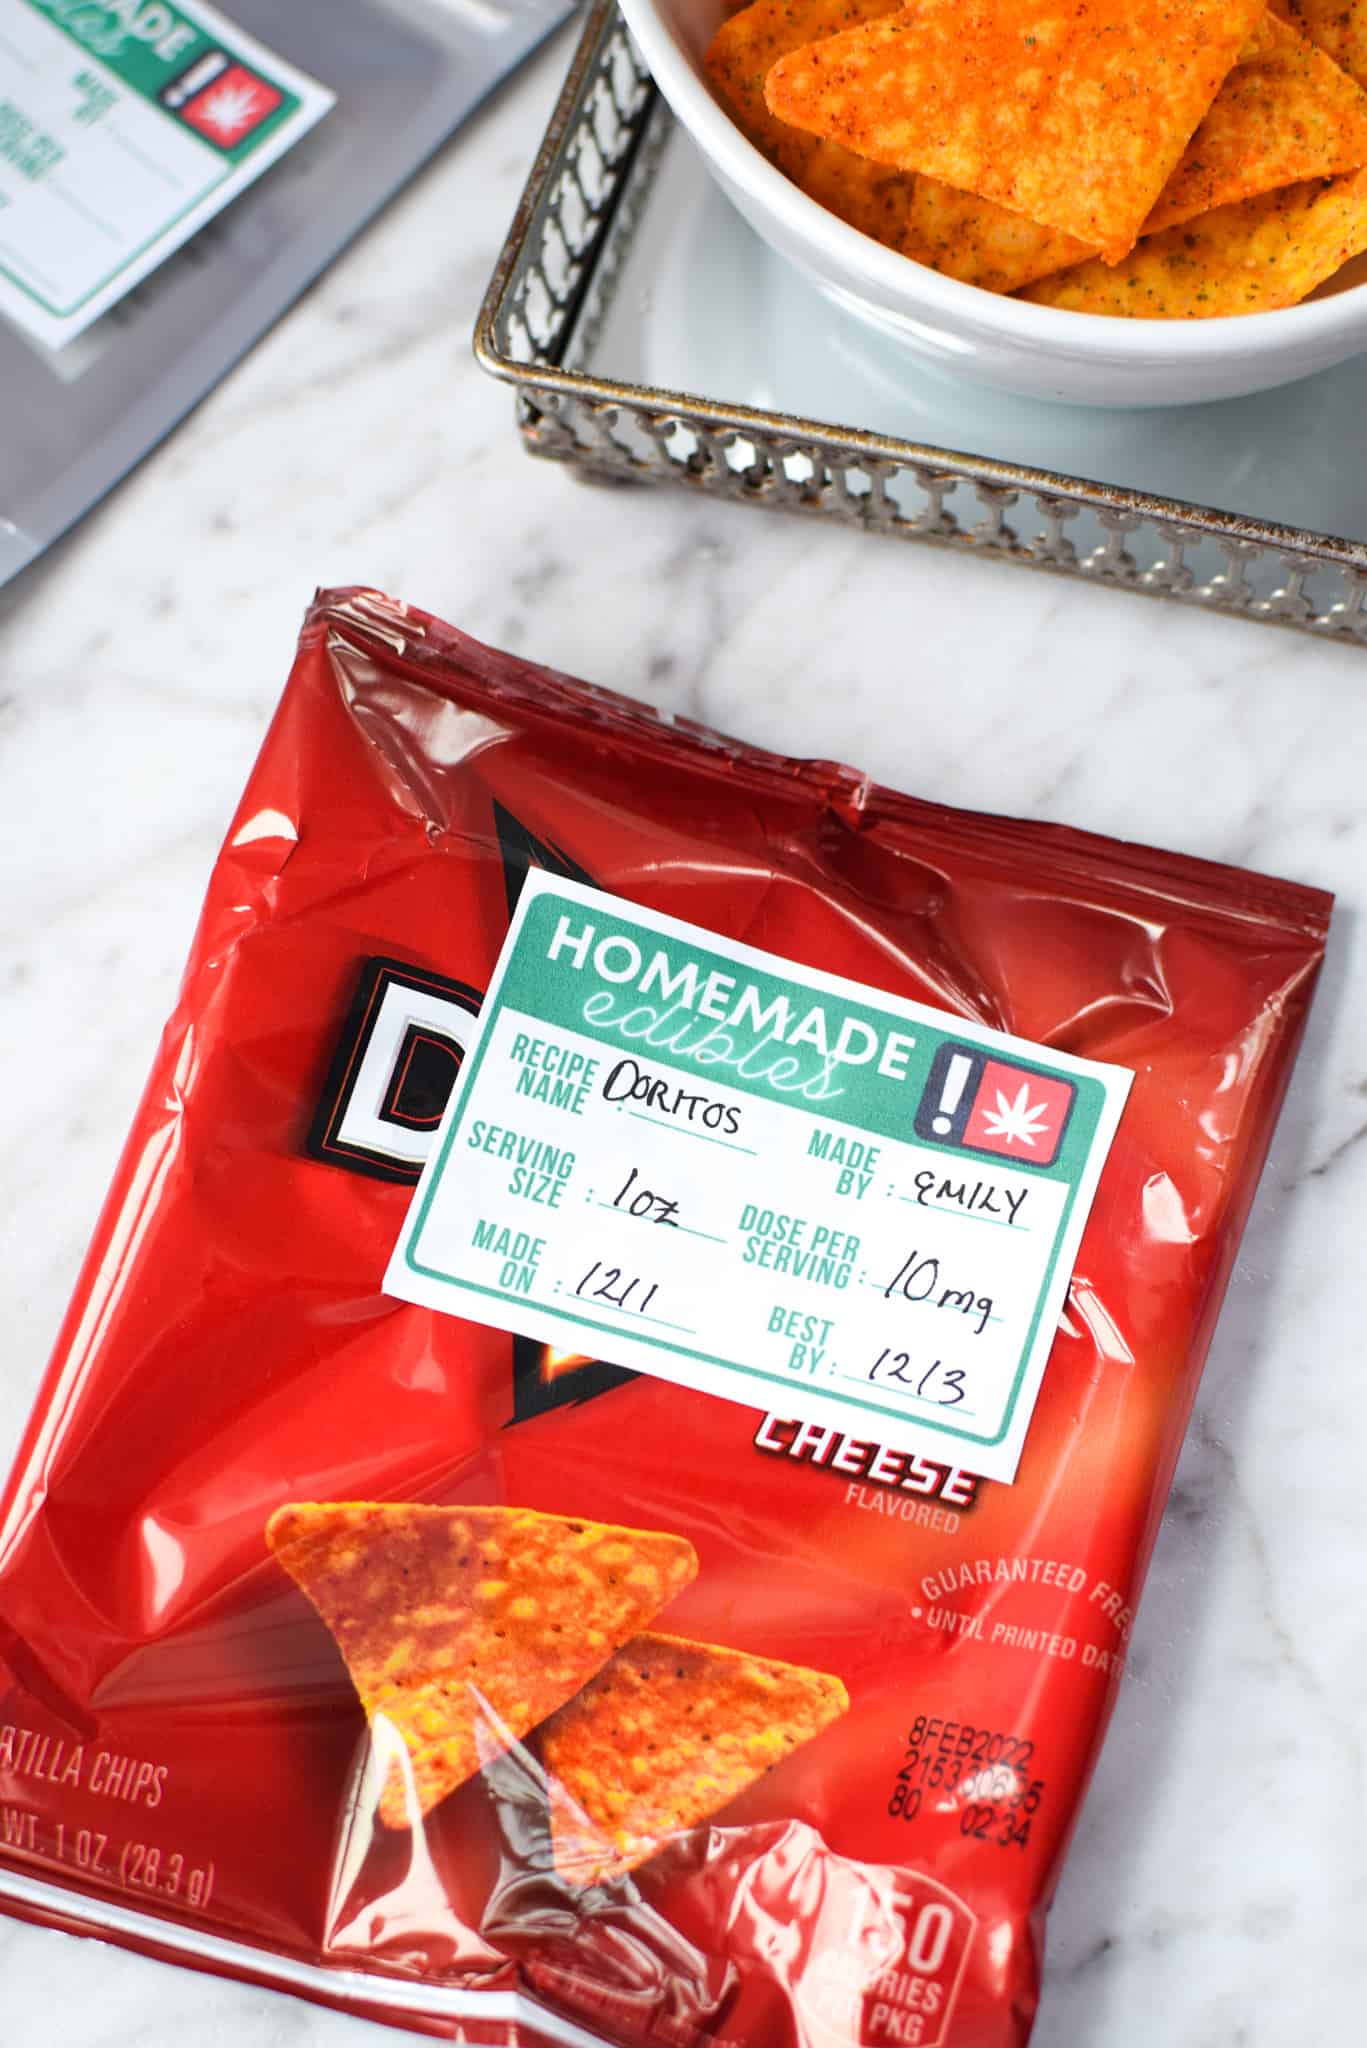 A bag of Doritos with an edible label sticker.